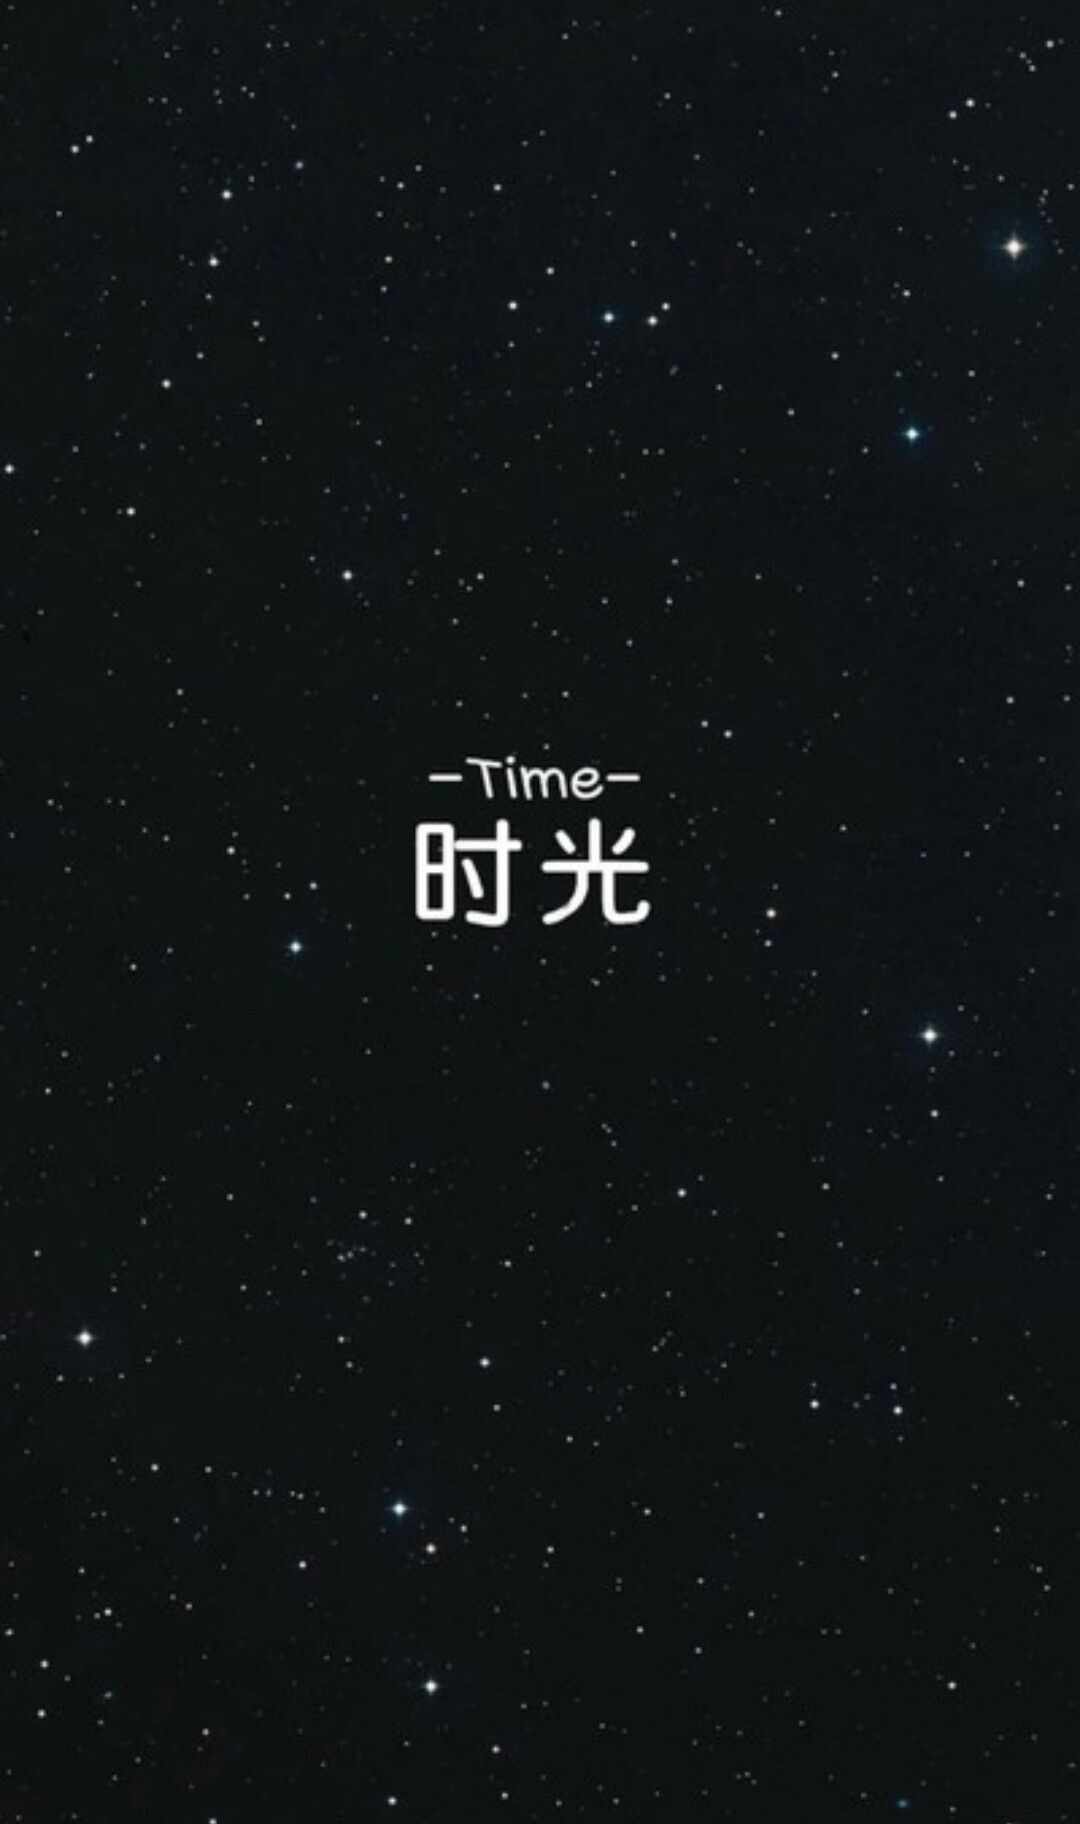  China Hintergrundbild 1080x1824. linaphat Stars Time Chinese Wallpaper. Chinese wallpaper, Words wallpaper, Japanese quotes